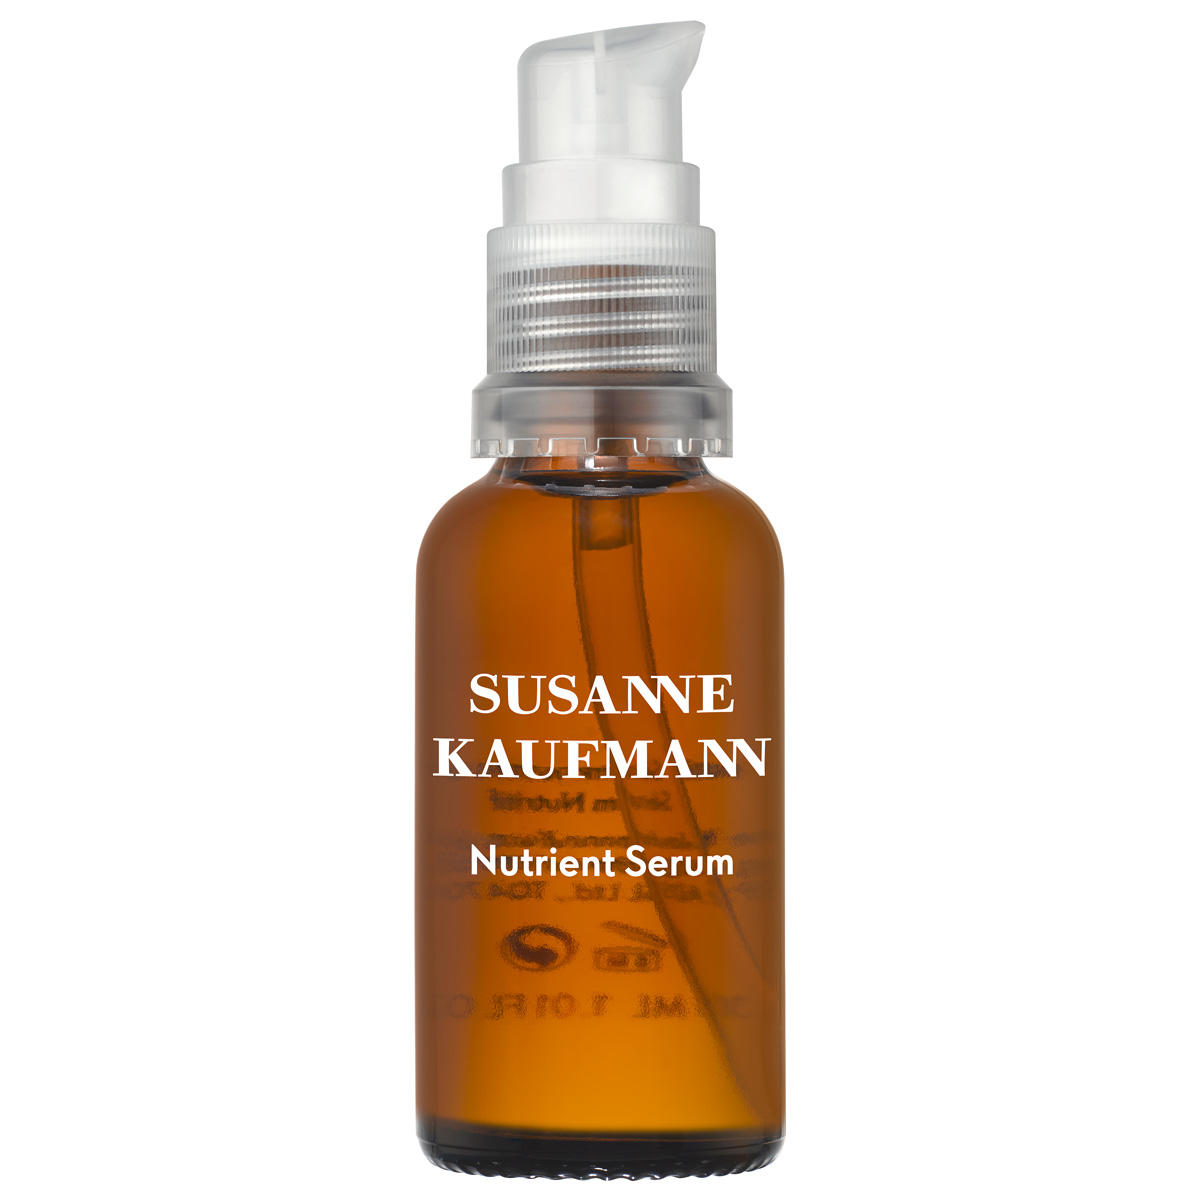 Susanne Kaufmann concentré de nutriments lissant la peau - Nutrient Serum  - 1